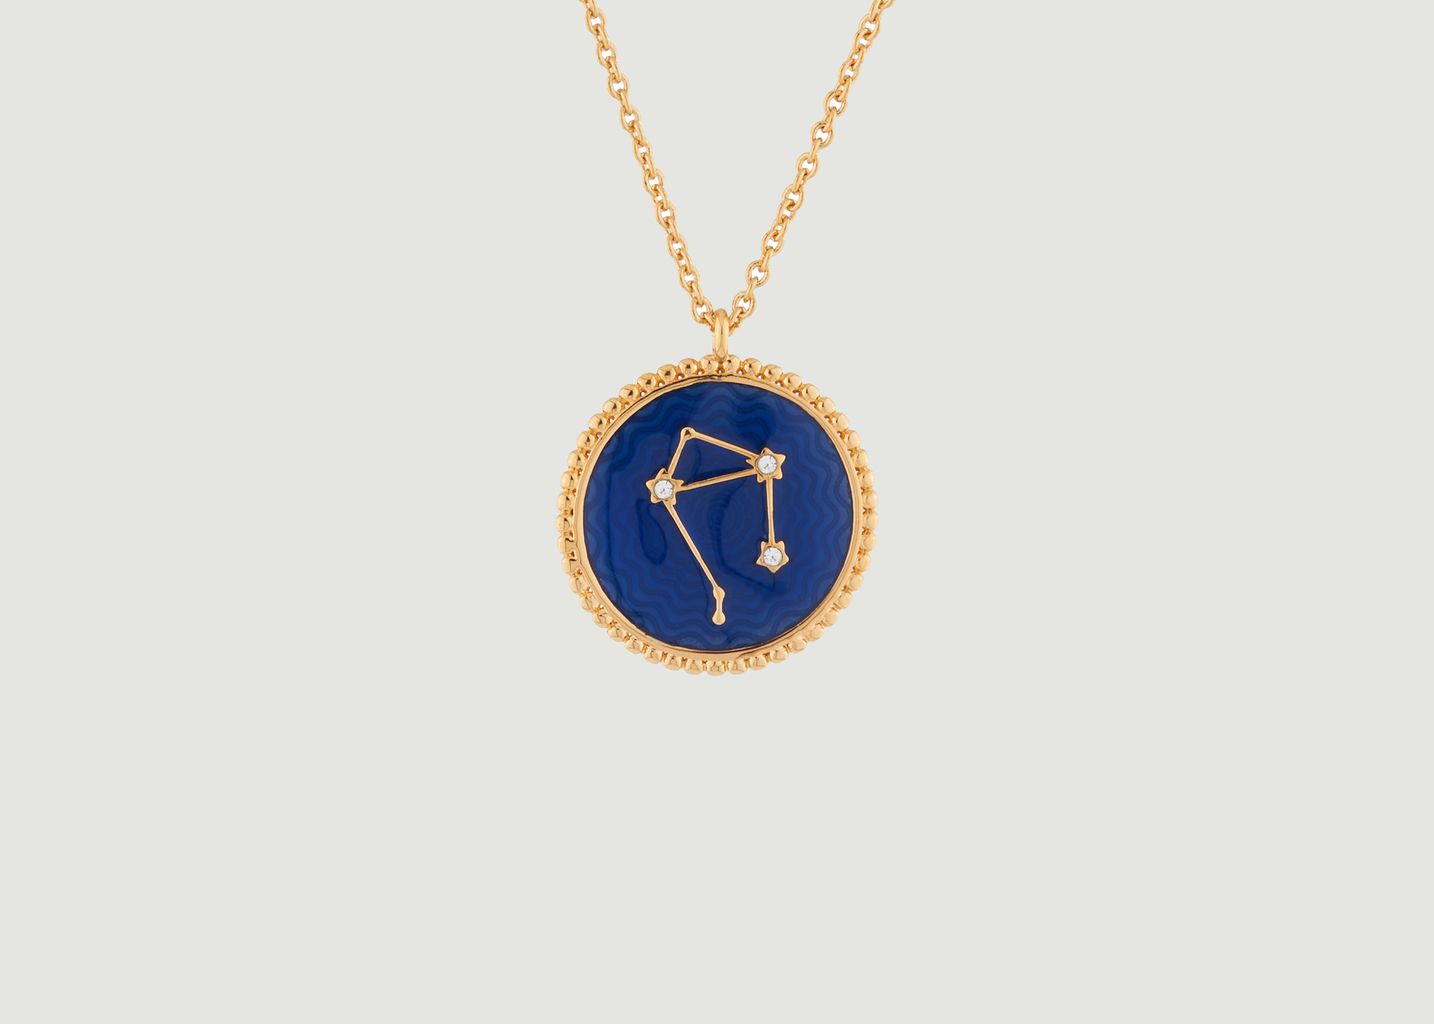 Collier avec pendentif signe astrologique Balance - Les Néréides